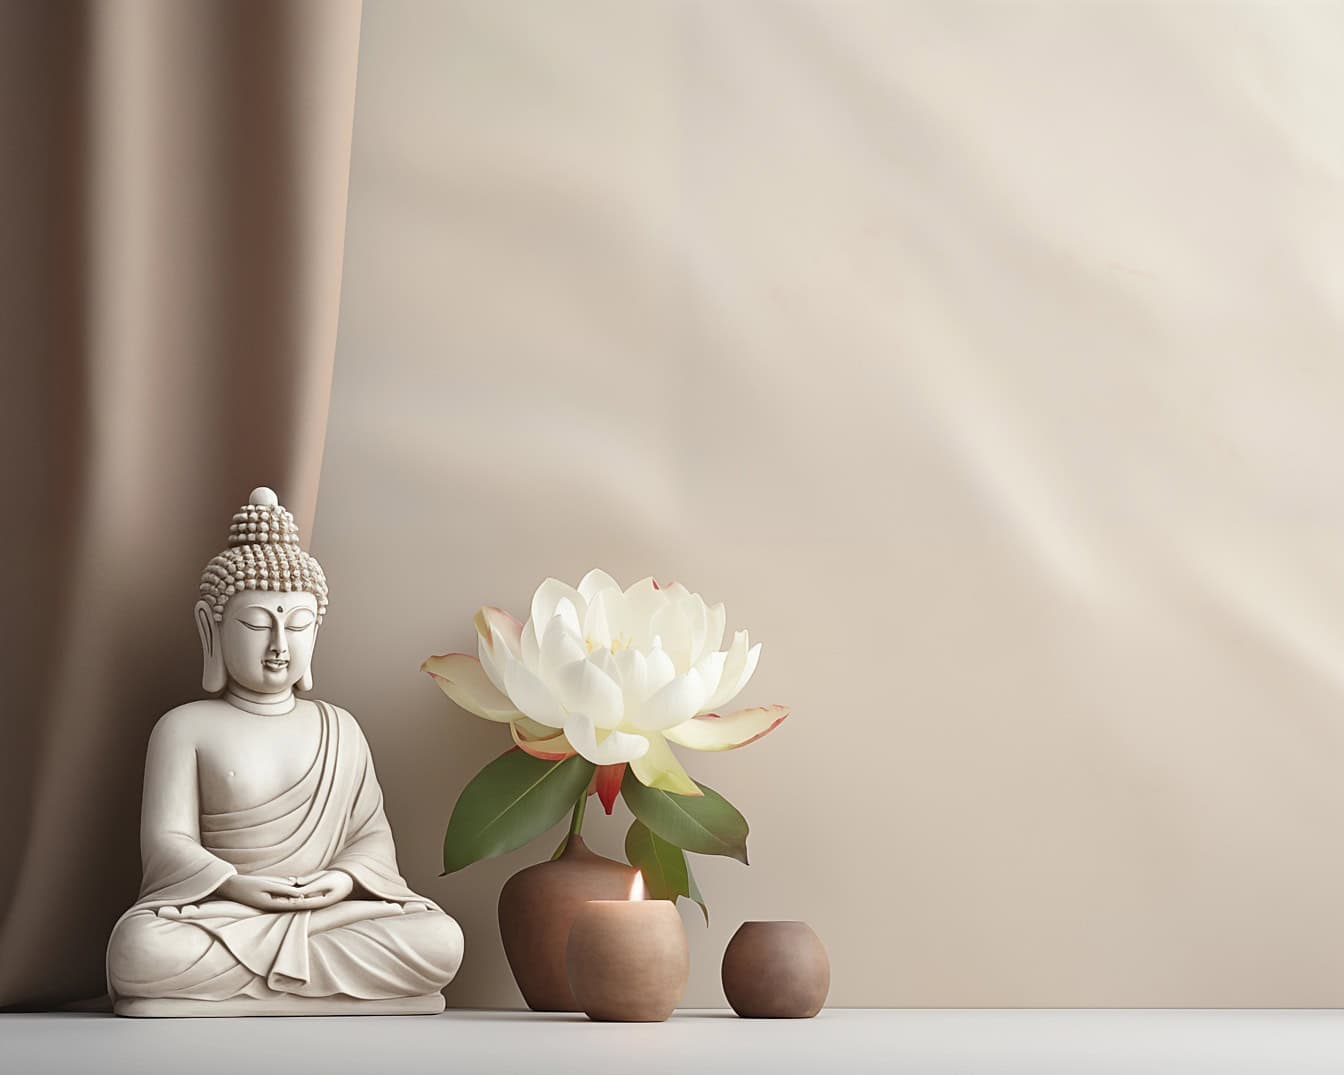 Una estatua de Buda blanco sentada junto a una flor de loto blanca, una ilustración que representa la meditación zen